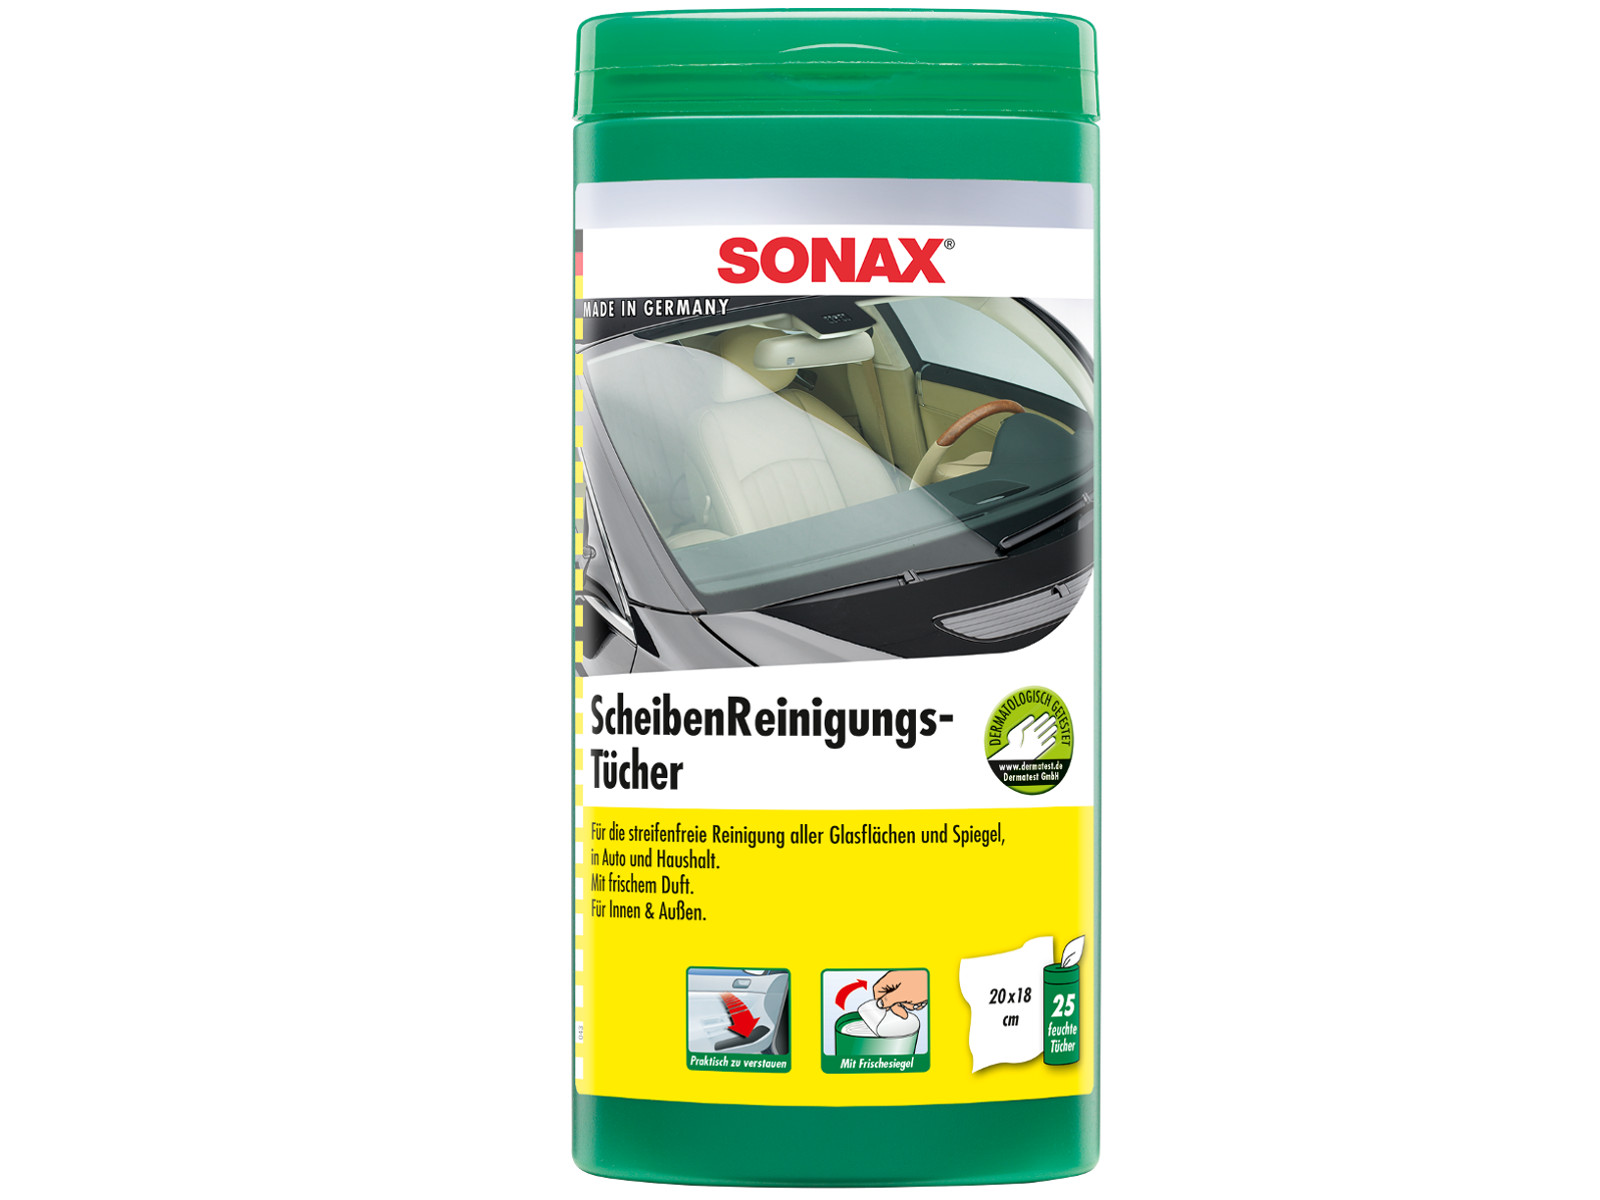 SONAX ScheibenReinigungsTücher PET-Dose, für Innen+Außen, 25 Feuchttücher, KFZ-Pflege, Pflegemittel